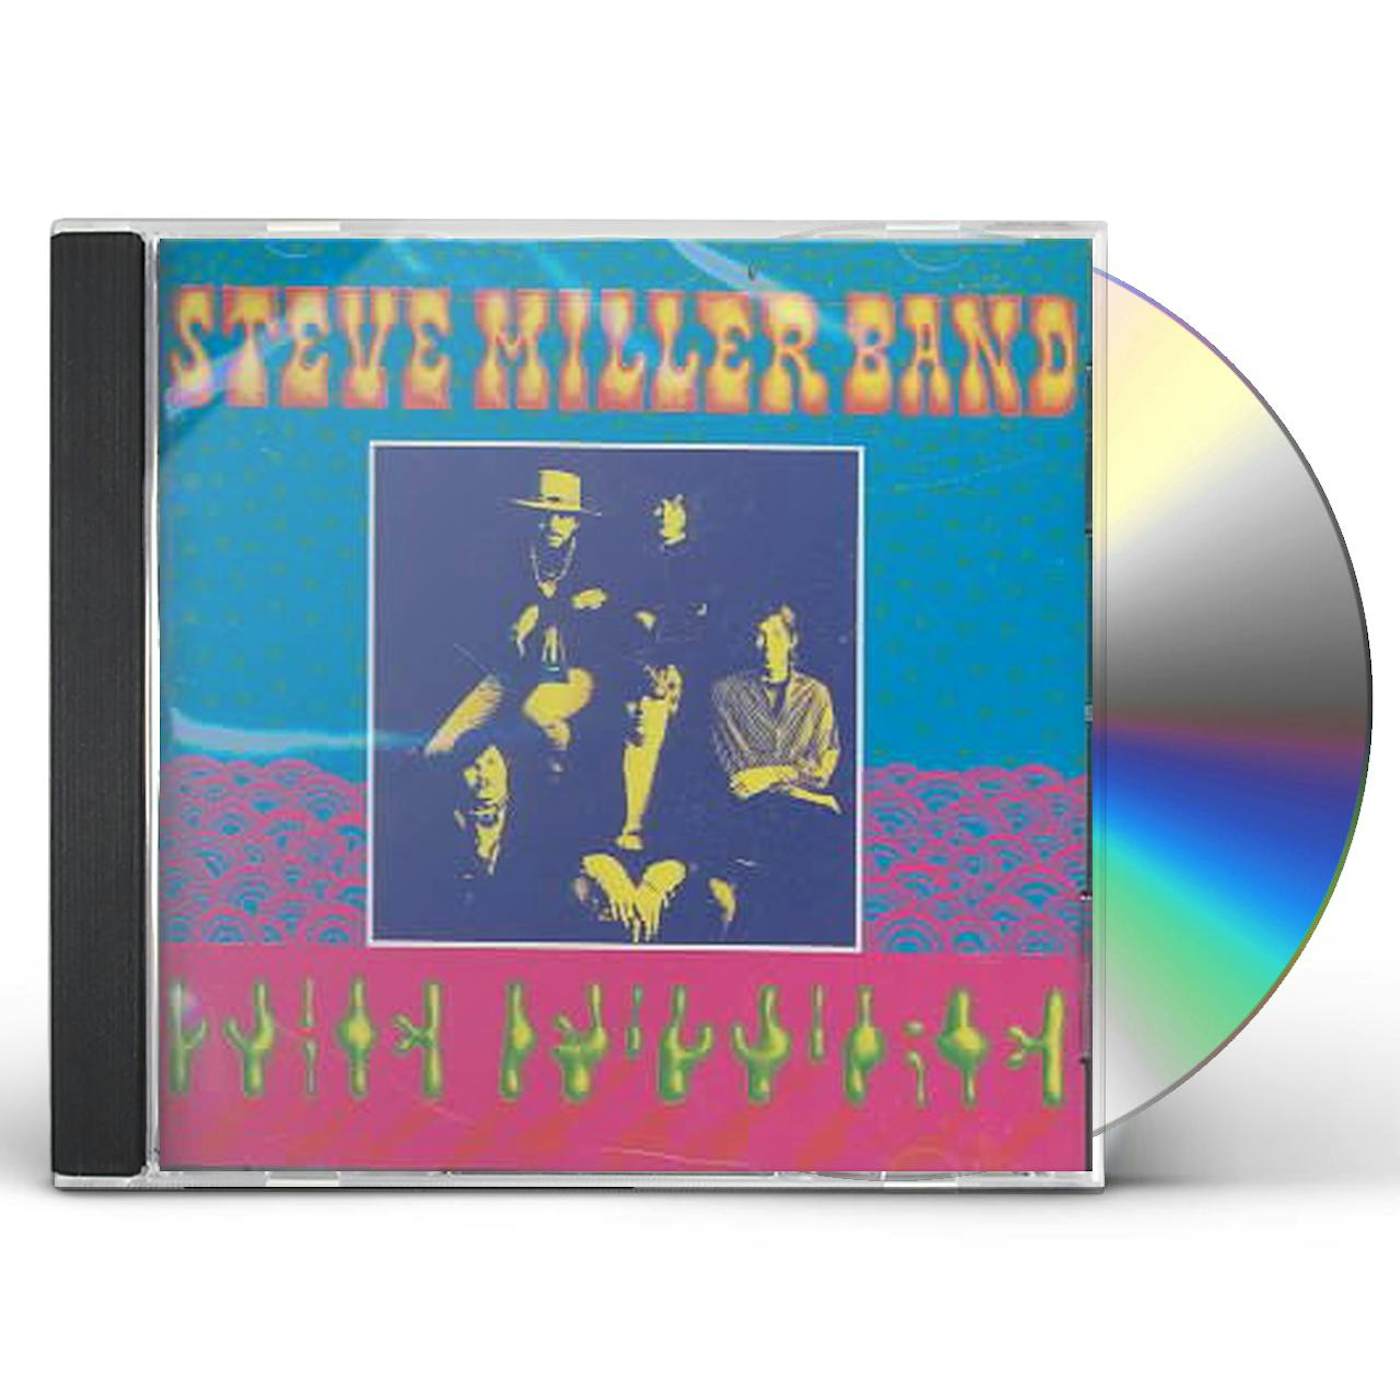 Steve Miller Band CHILDREN OF THE FUTURE CD